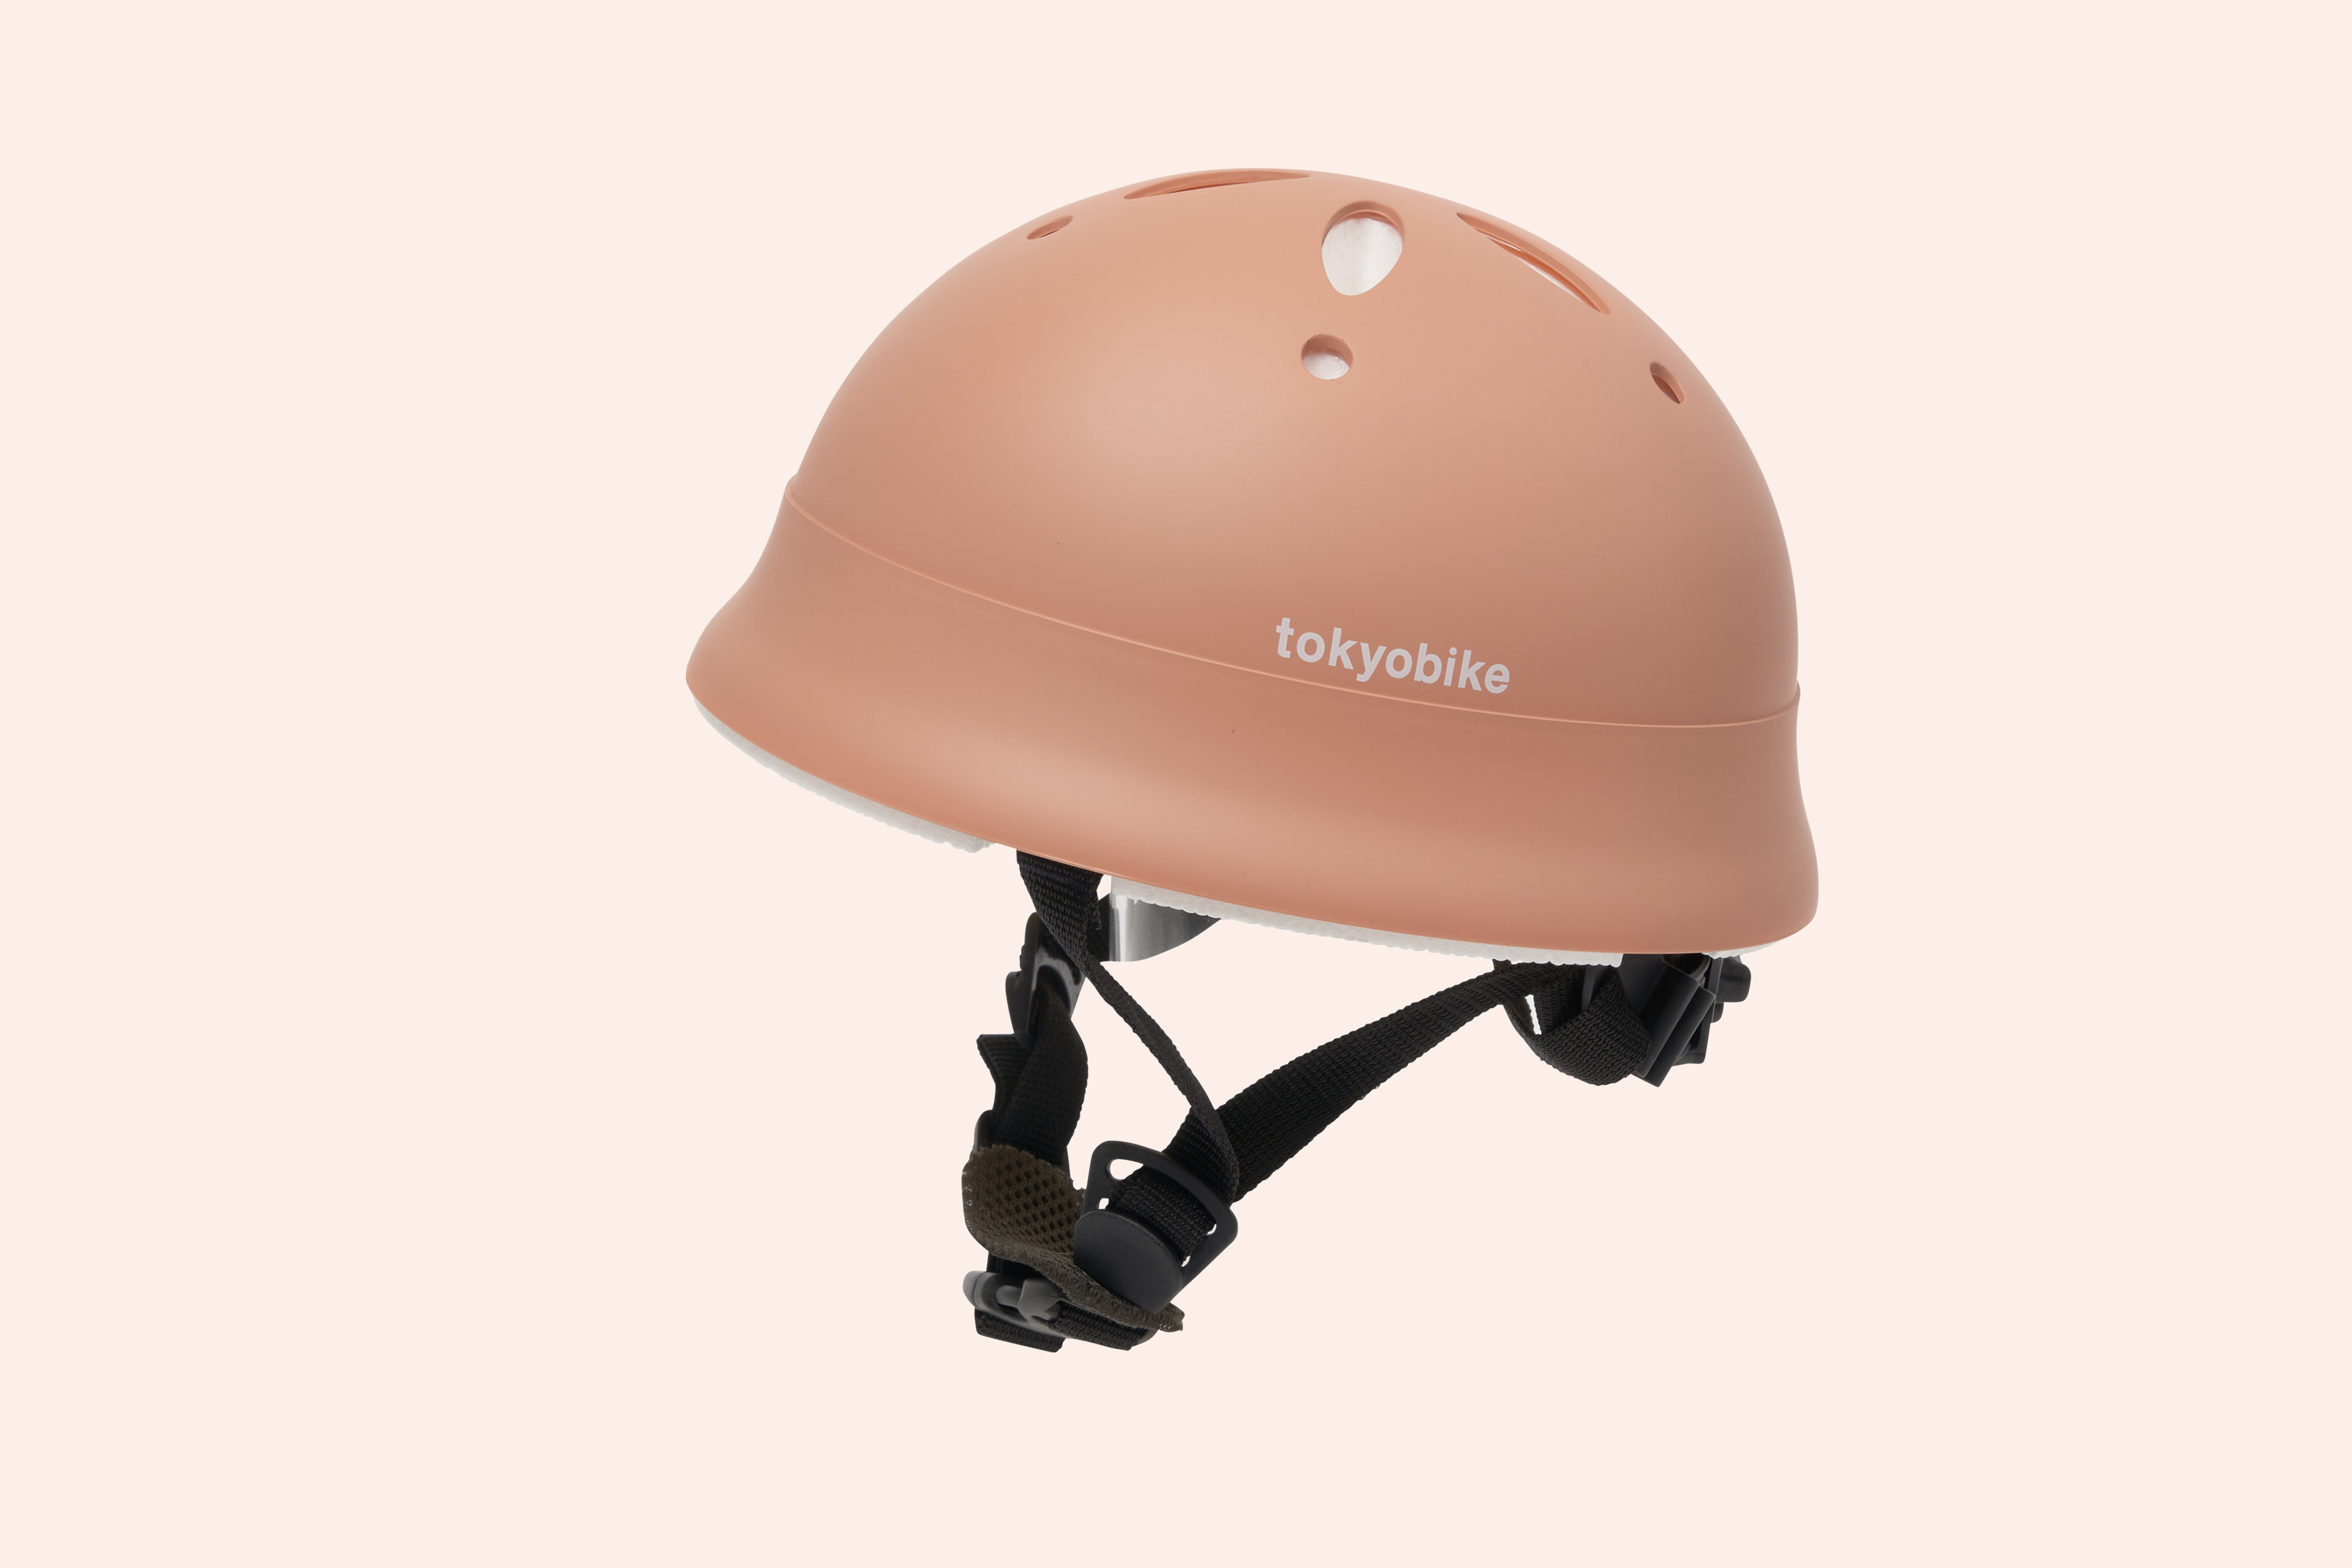 ベビーLヘルメット tokyobike Limited